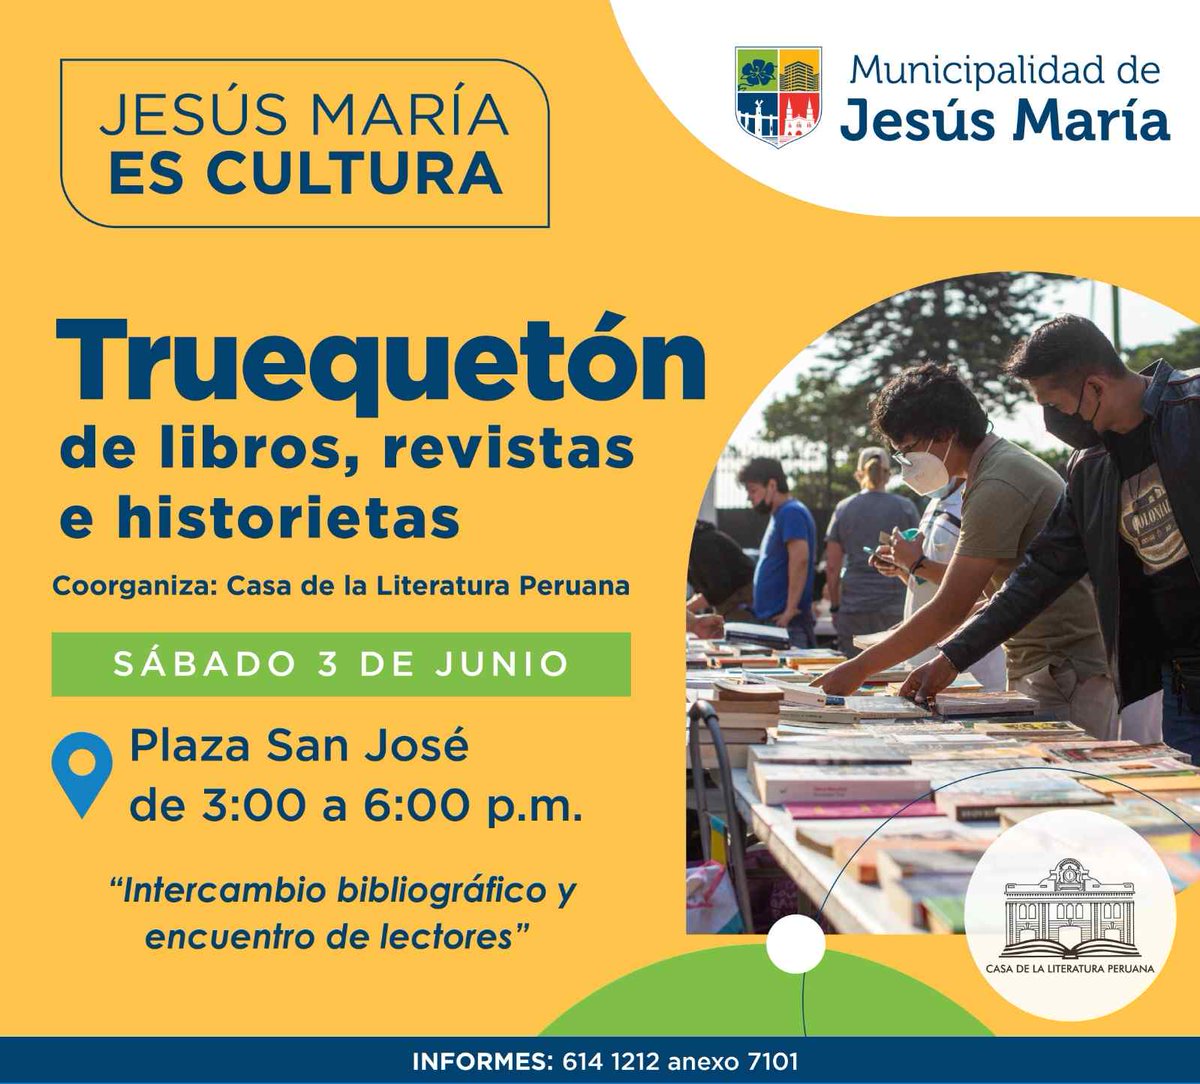 Te invitamos a un nuevo encuentro de lectores. Este sábado 3 de junio, de 3:00 a 6:00 p.m., se realizará en la Plaza San José de Jesús María un nuevo Truequetón de libros, revistas e historietas. #IngresoLibre